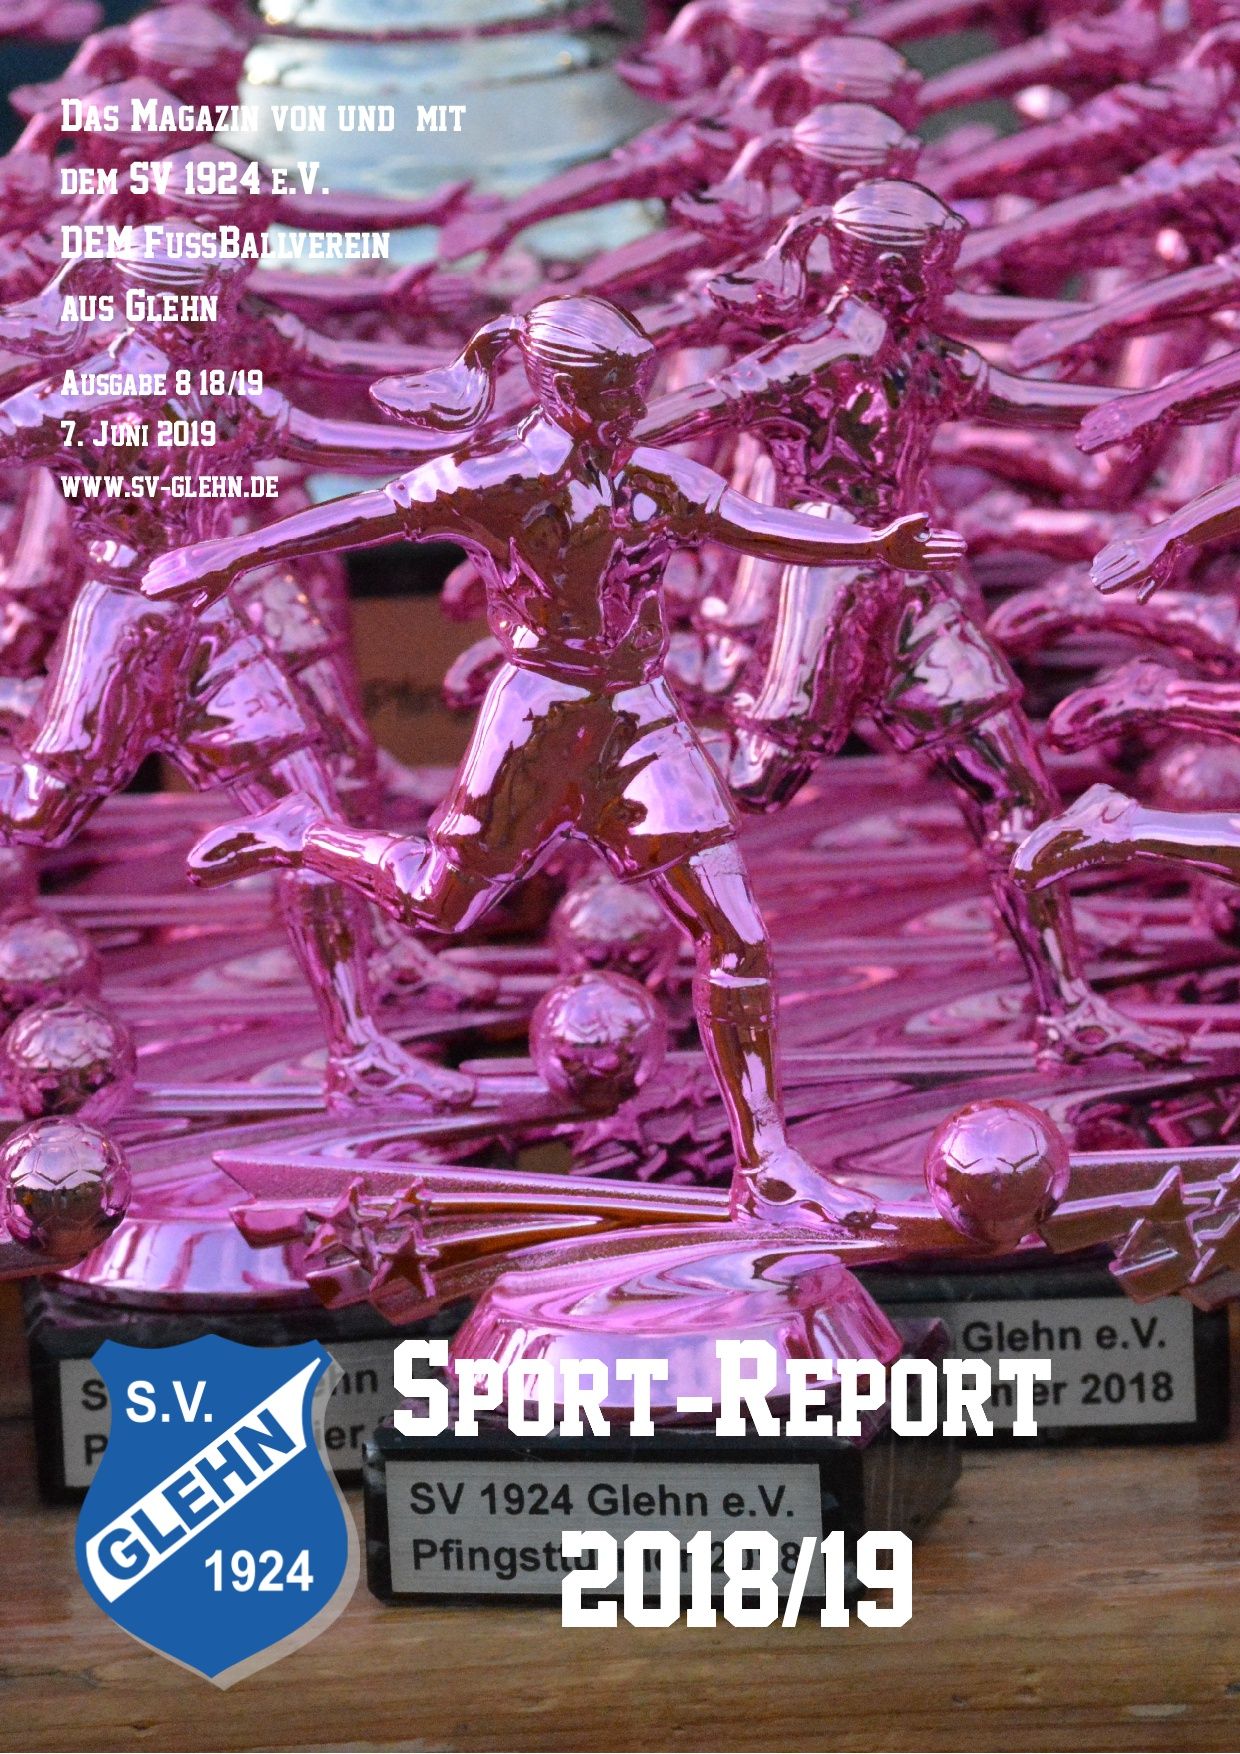 Der Sport-Report - 2018/19 | SV 1924 Glehn e.V.